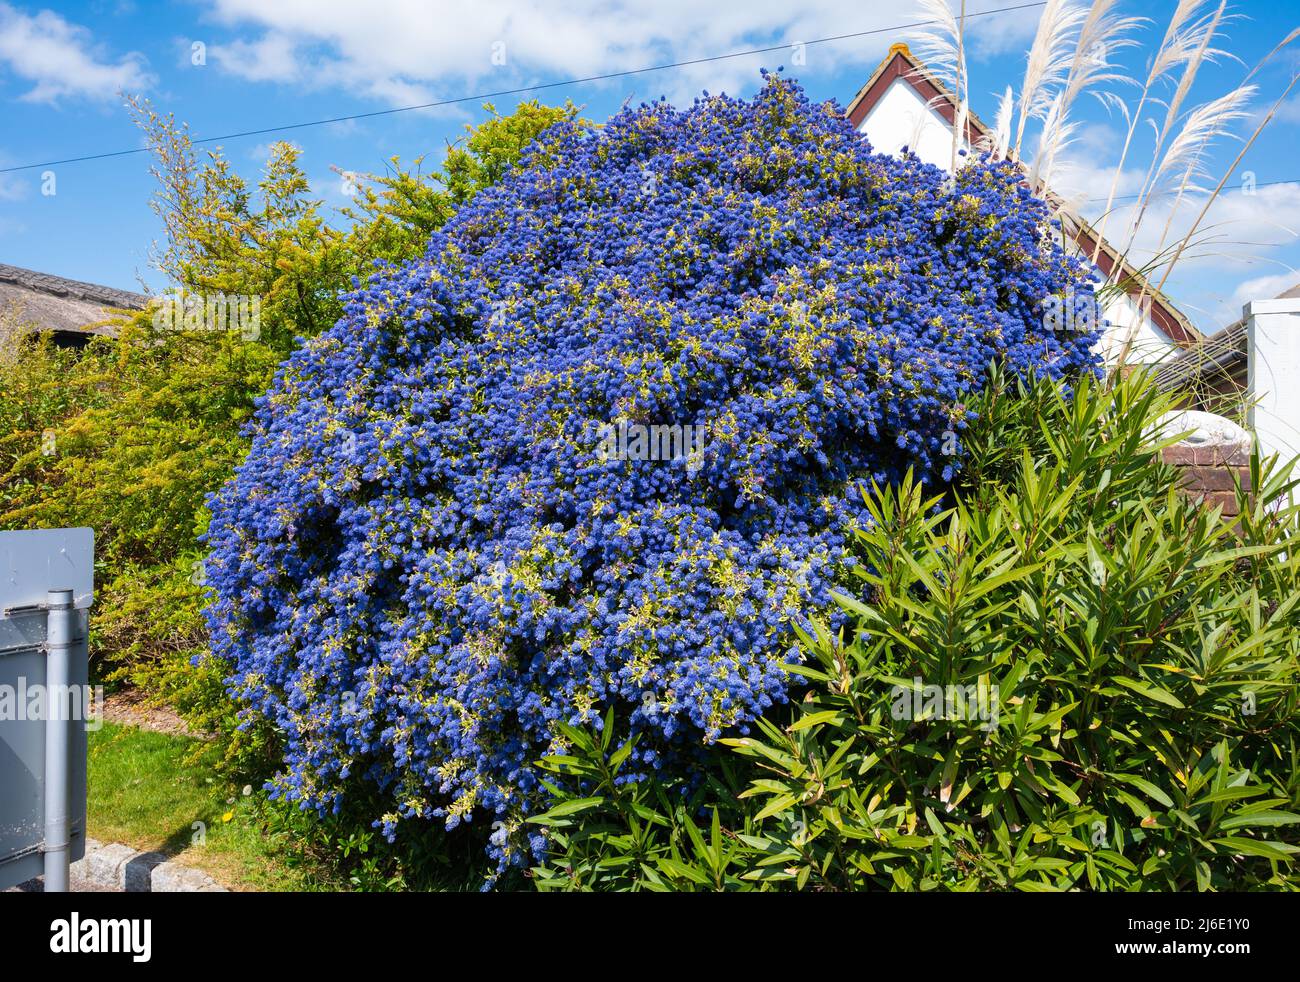 Le lilas californien (Ceanothus), un buisson aux fleurs bleues qui pousse au printemps à West Sussex, Angleterre, Royaume-Uni. Banque D'Images